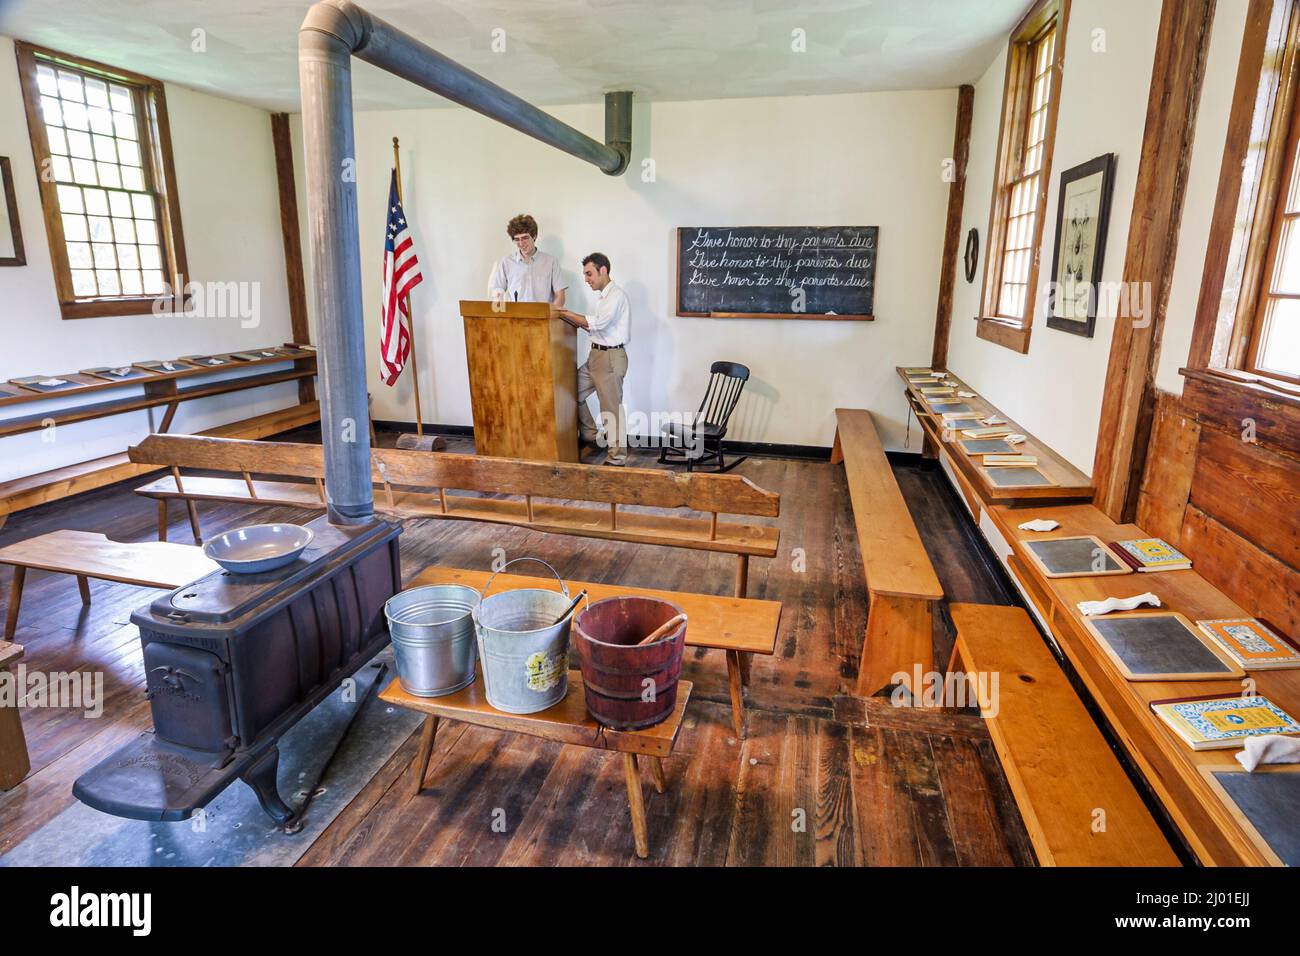 Ohio Lorain County, Oberlin, Heritage Center, centro, Little Red Schoolhouse 1836, istruzione, studio, panchine, una stanza, stufa, OH0615040024 Foto Stock